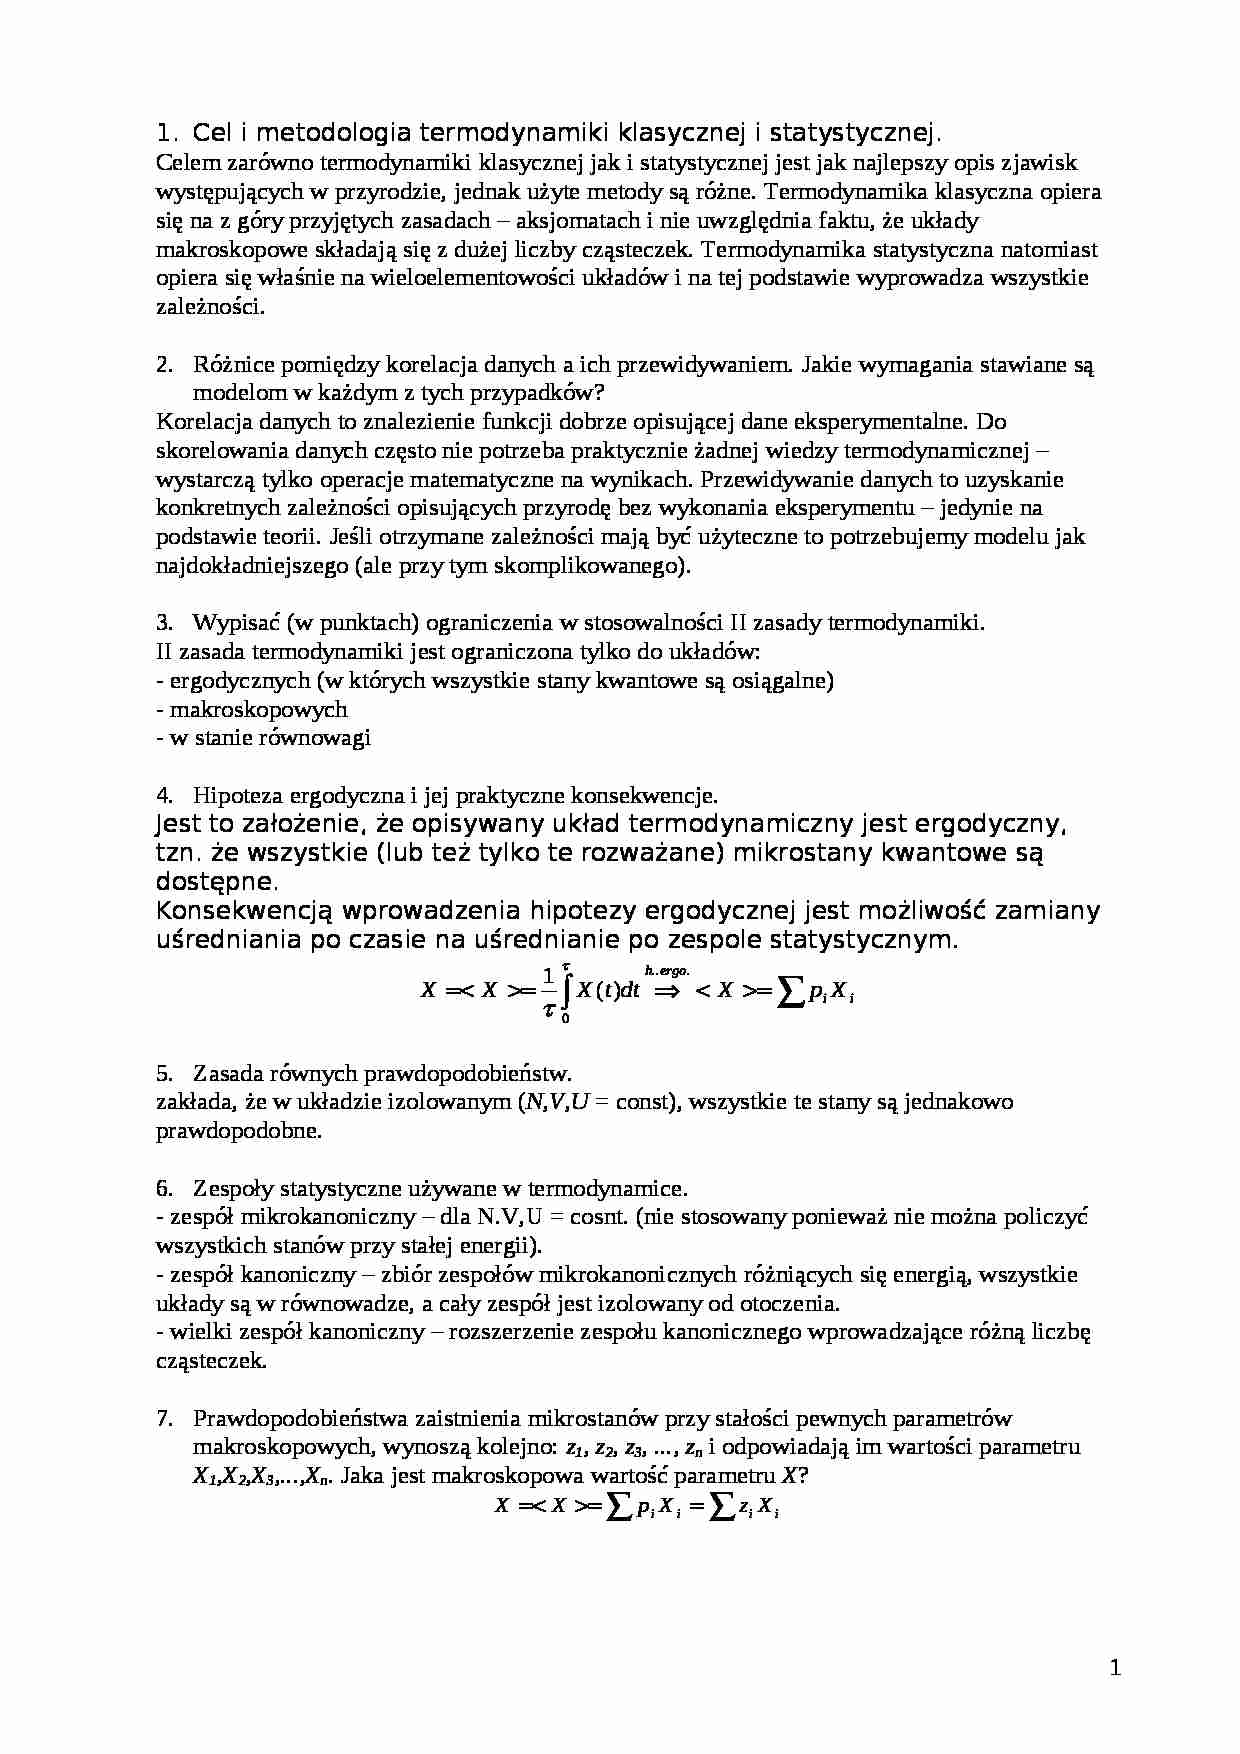 Termodynamika molekularna-pytania, opracowanie - strona 1